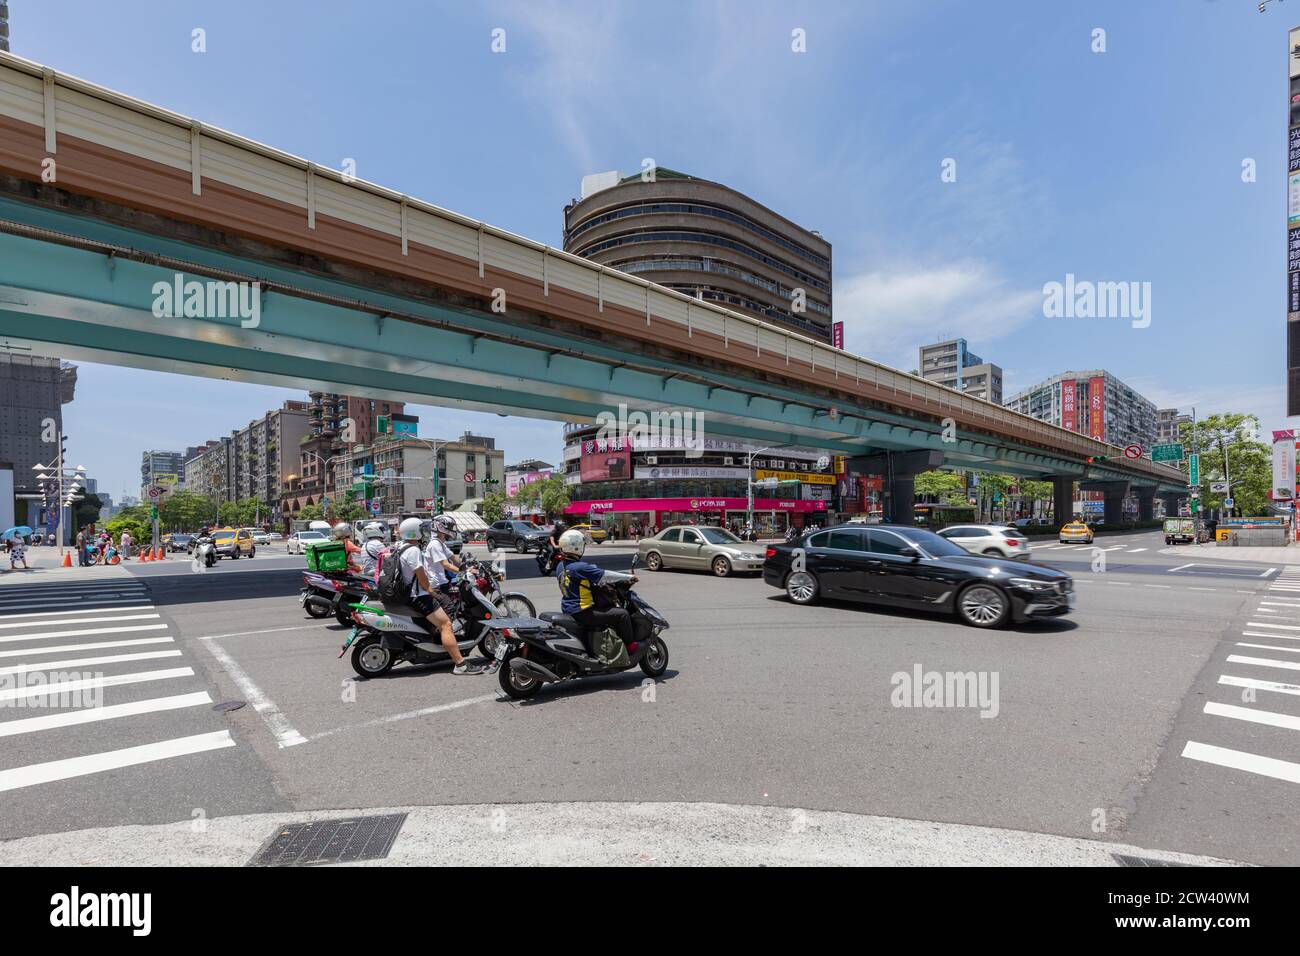 Intersection avec le système de MRT de piste lumineuse surélevée de Taipei, Zhongxiao-Fuxing Station Taipei, Taïwan, 19 août 2020 Banque D'Images